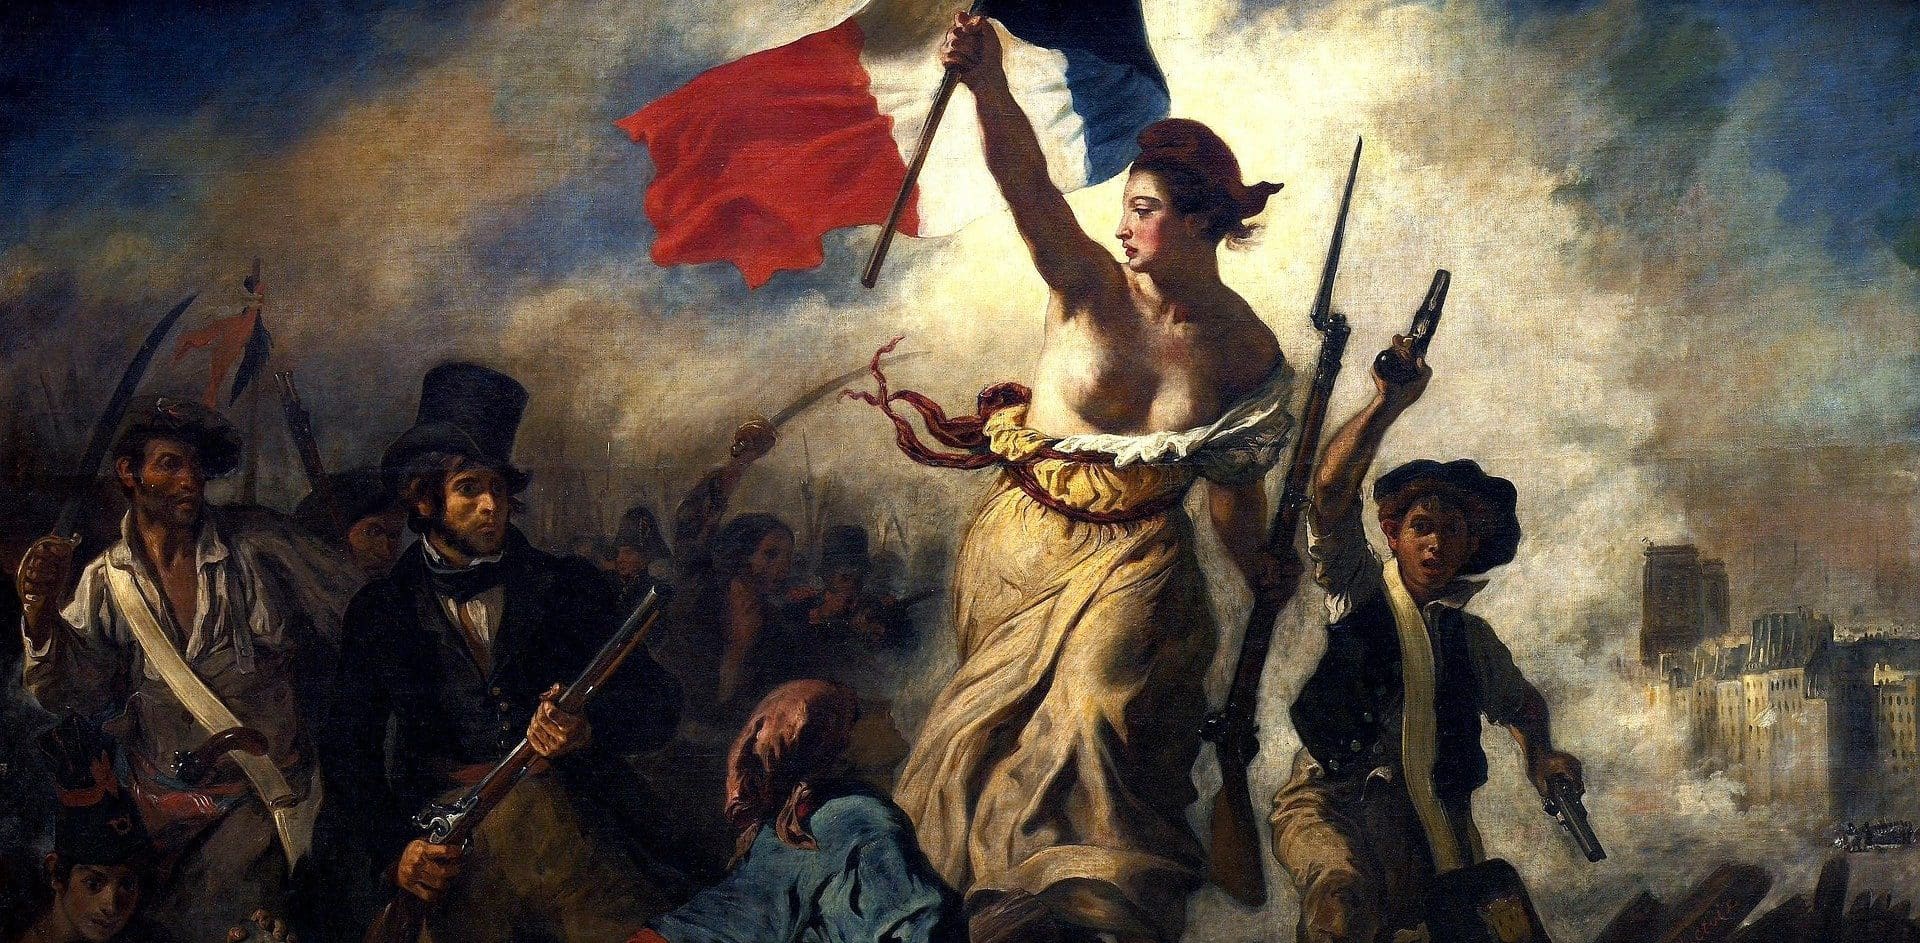 "La Liberté veileder folket"